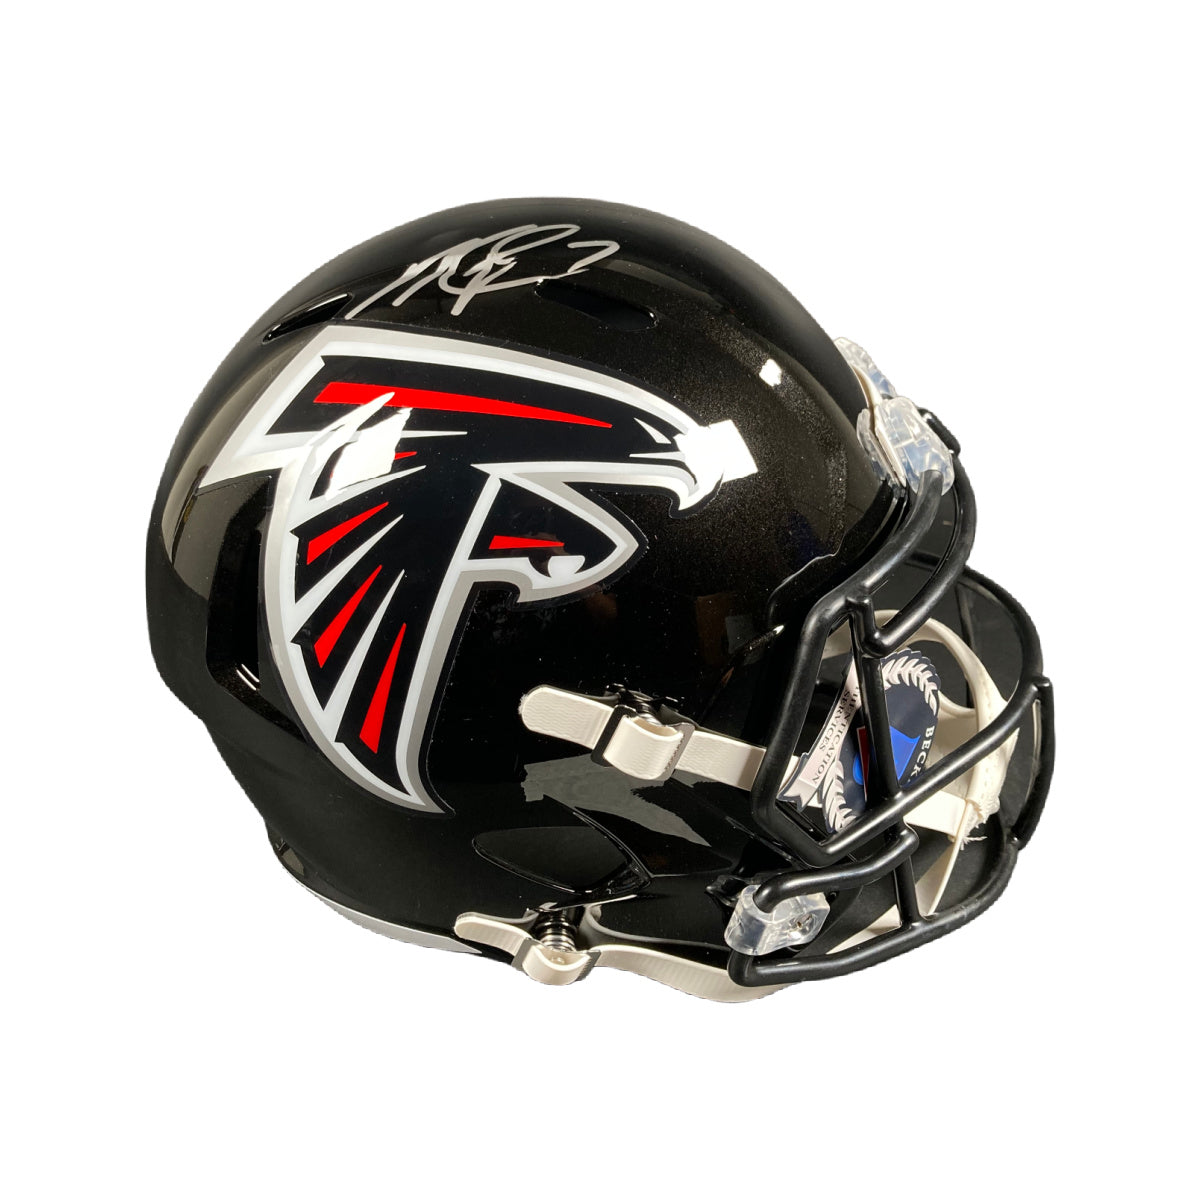 Michael Vick Signed Atlanta Falcons FS Helmet Autographed BAS COA